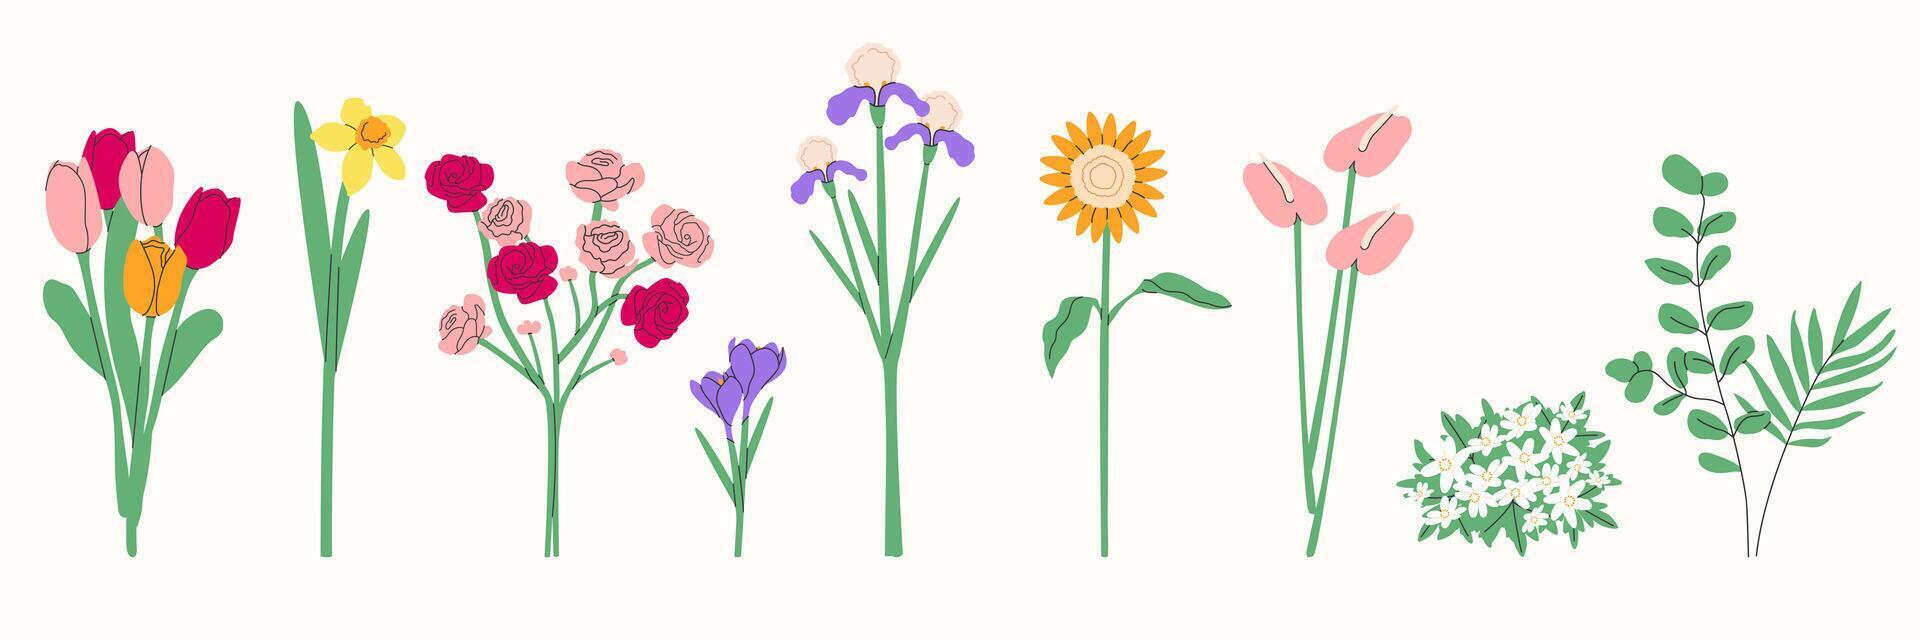 Blume Blumenstrauß.Frühling und Sommer- Blumen, Pflanzen zum Dekoration, Blühen Kräuter isoliert auf Weiß hintergrund.hand gezeichnet set.vektor Illustration eps 10 vektor